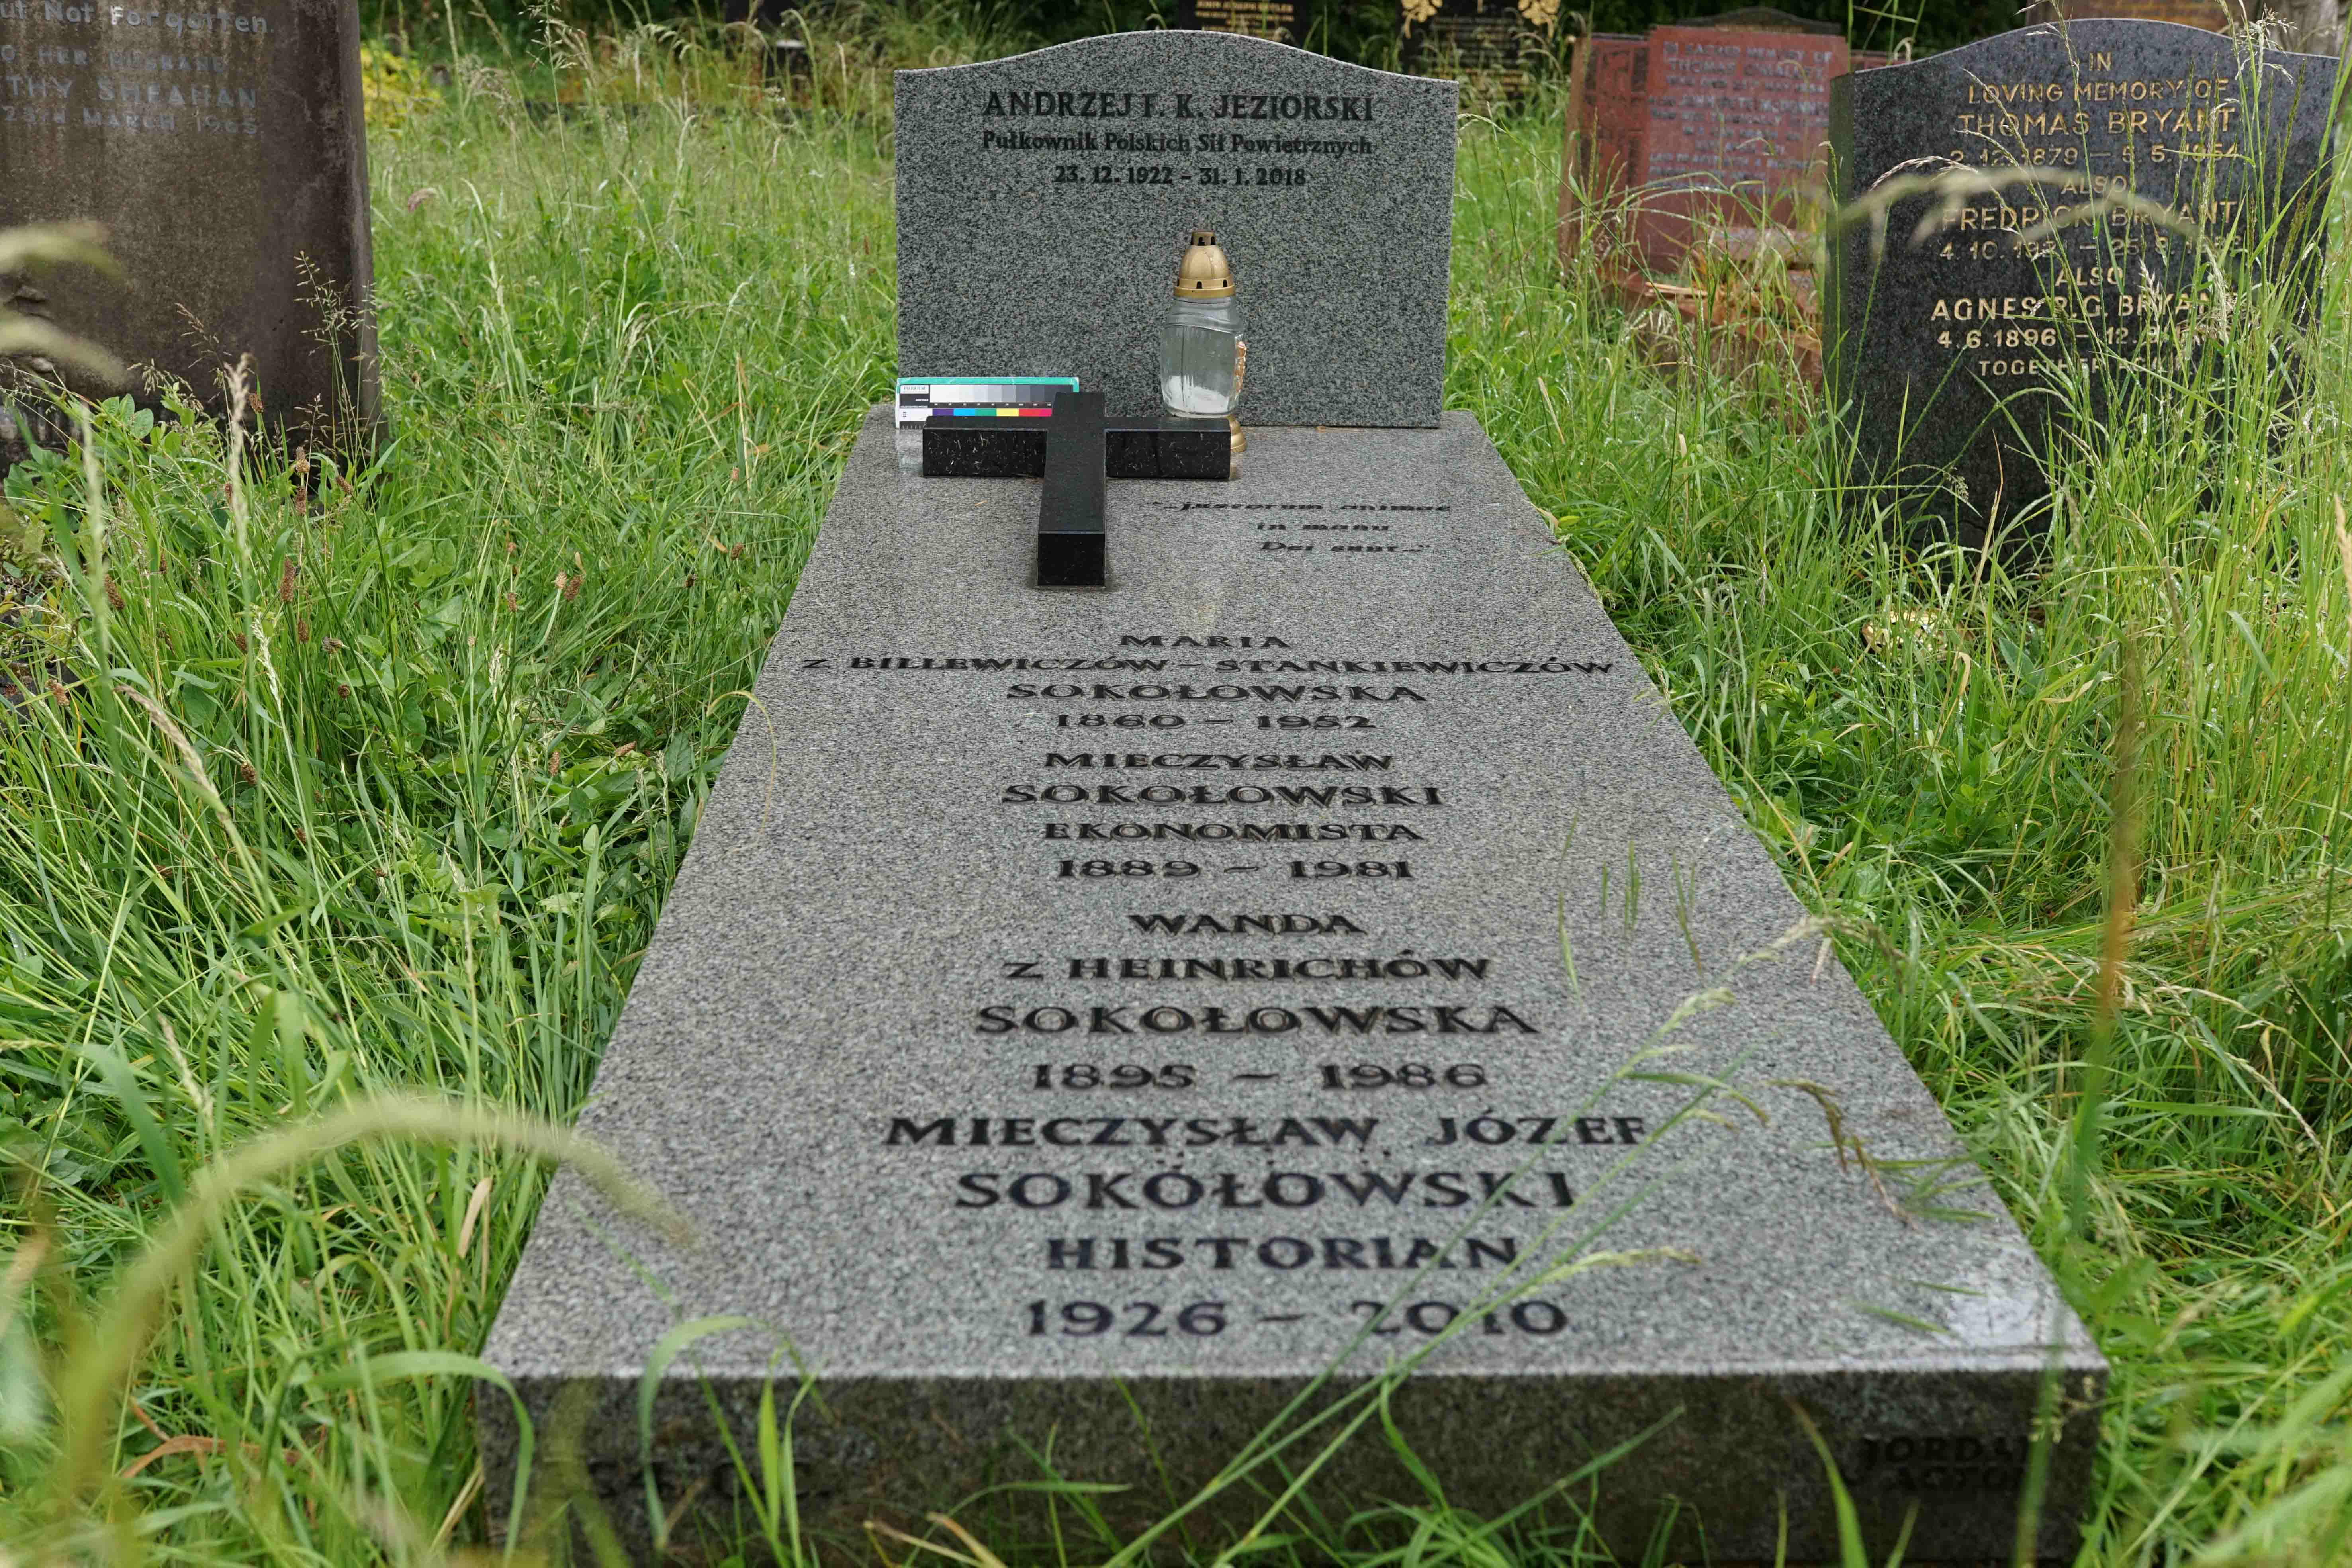 Tombstone of Andrzej Jeziorski and the Sokołowski family